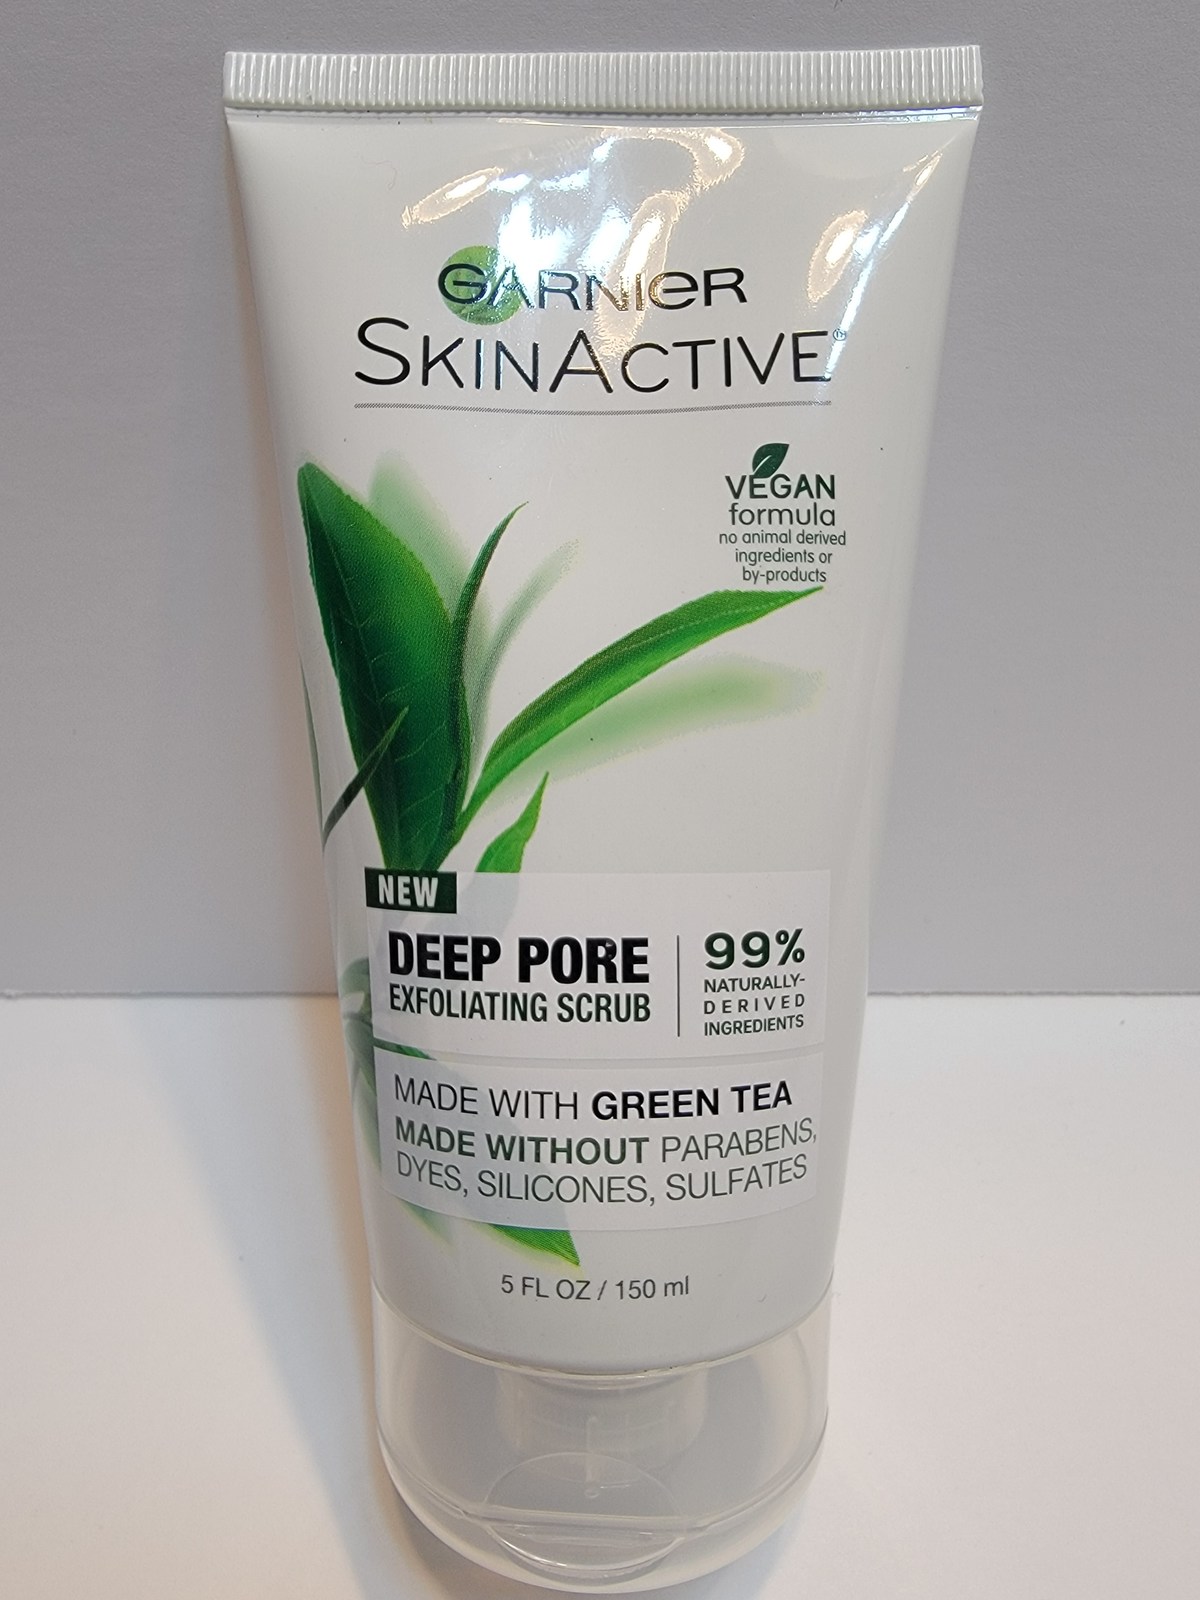 New Garnier Skinactive Deep Pore Exfoliating Facial Scrub With Green Tea 5 OZ  - $5.00